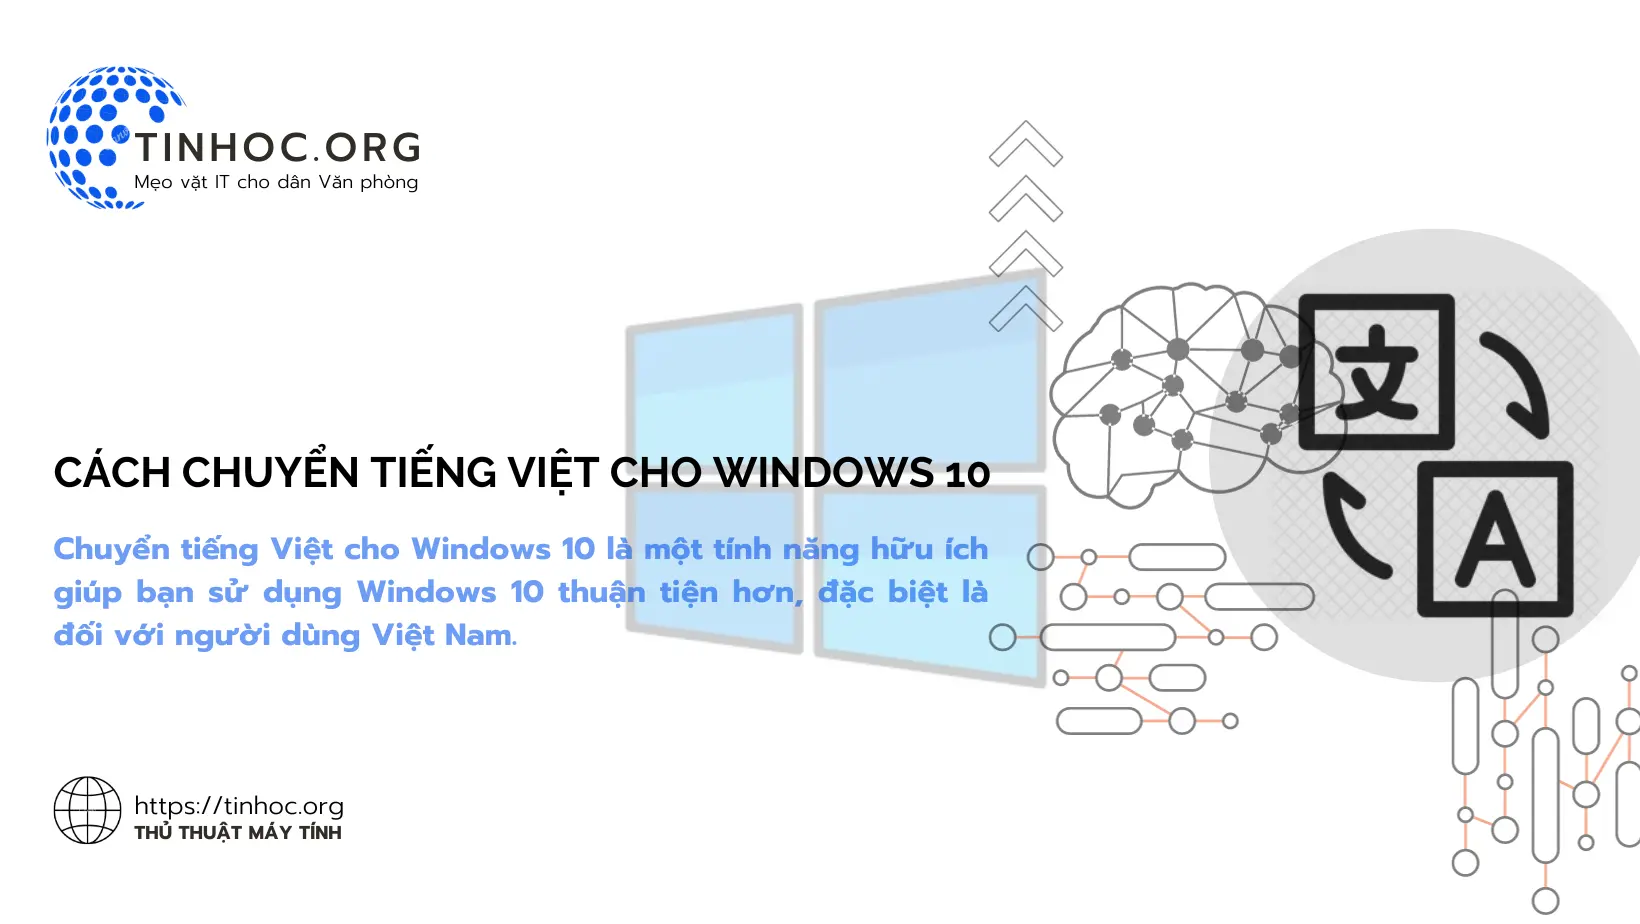 Chuyển giao diện hiển thị sang tiếng Việt cho Windows sẽ giúp bạn sử dụng Windows thuận tiện hơn, đặc biệt là đối với người dùng Việt Nam.